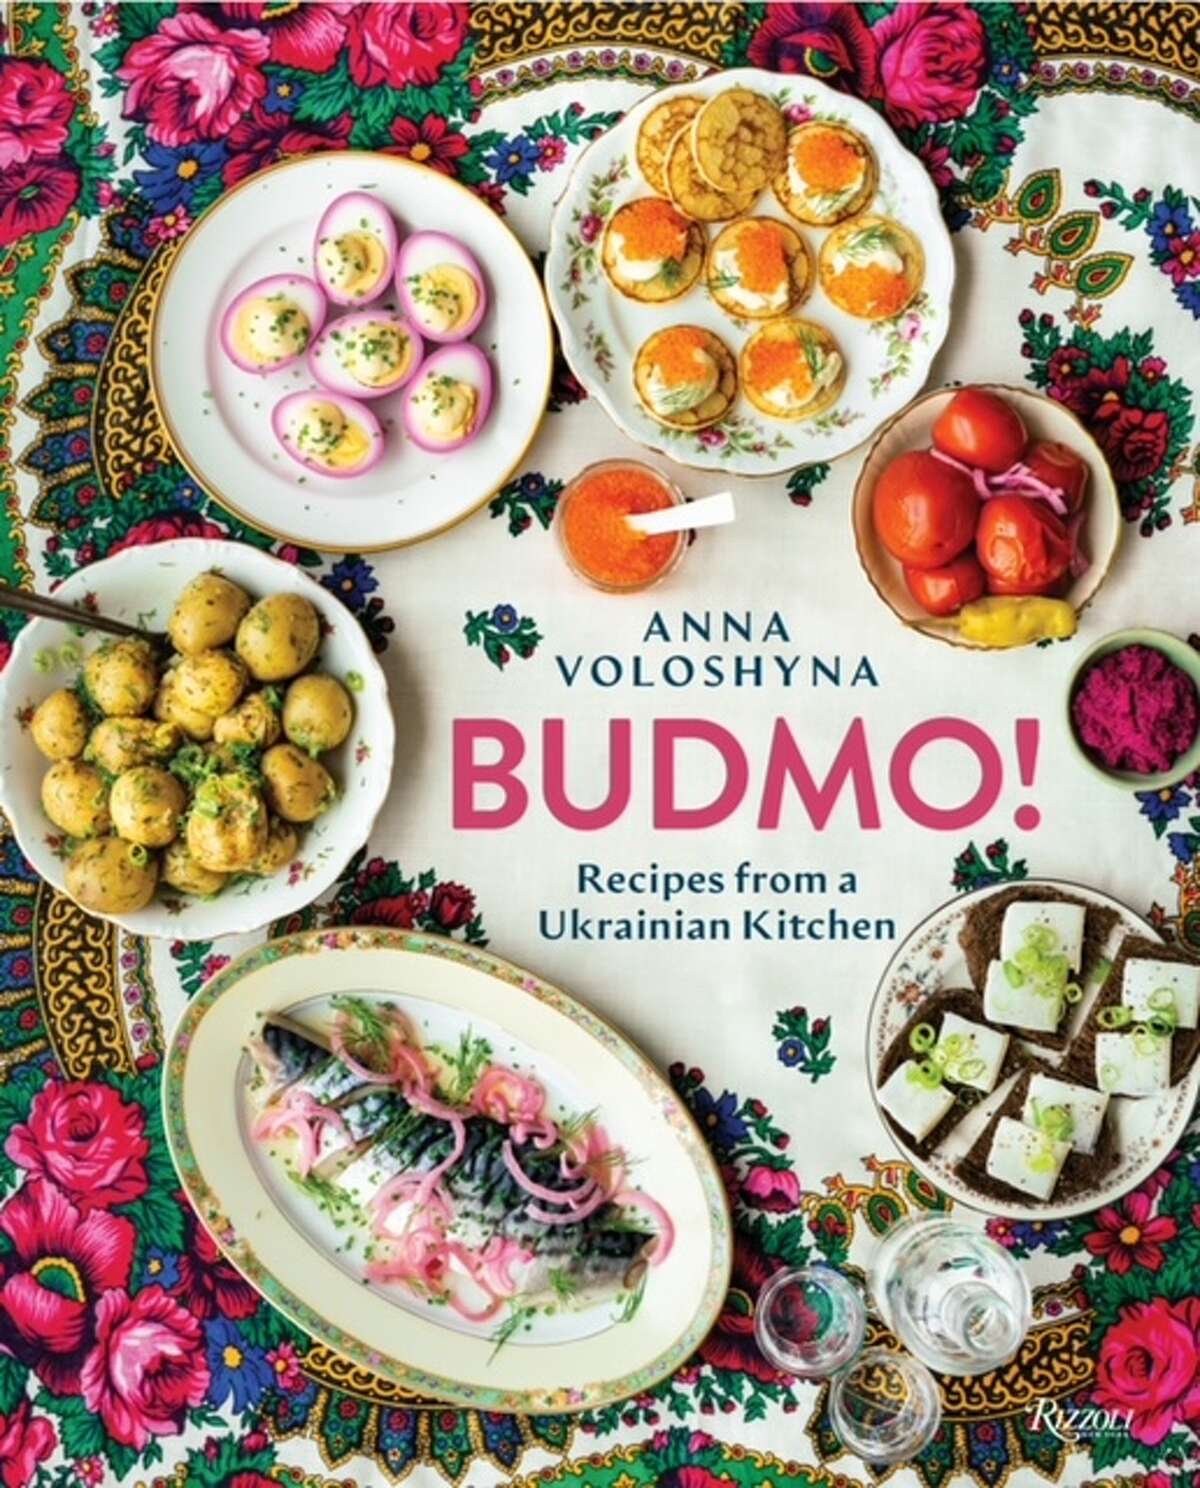 "Budmo! Recipes from a Ukrainian Kitchen" by Anna Voloshyna.